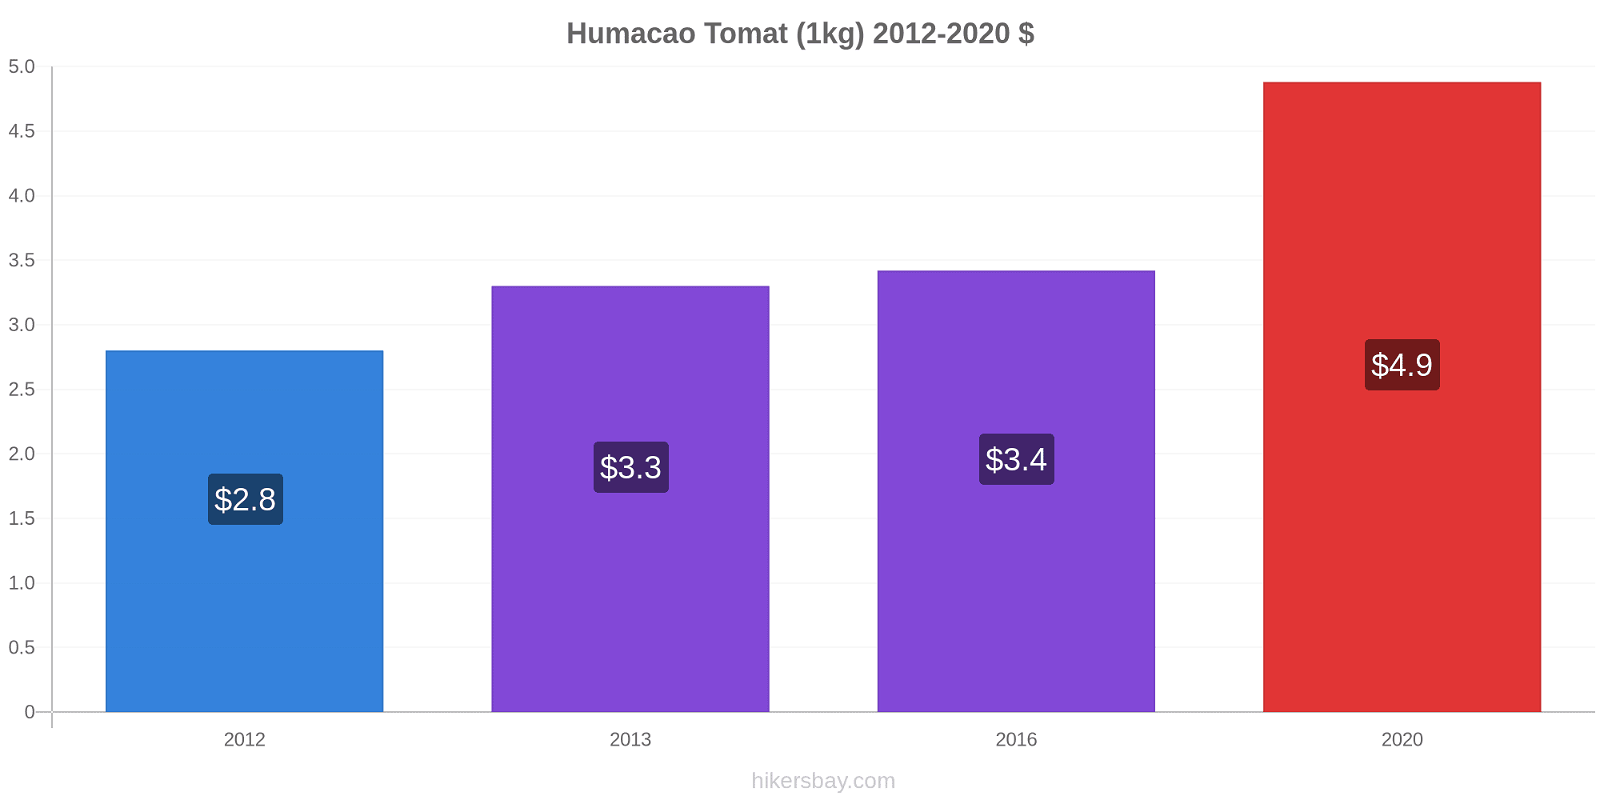 Humacao prisændringer Tomat (1kg) hikersbay.com